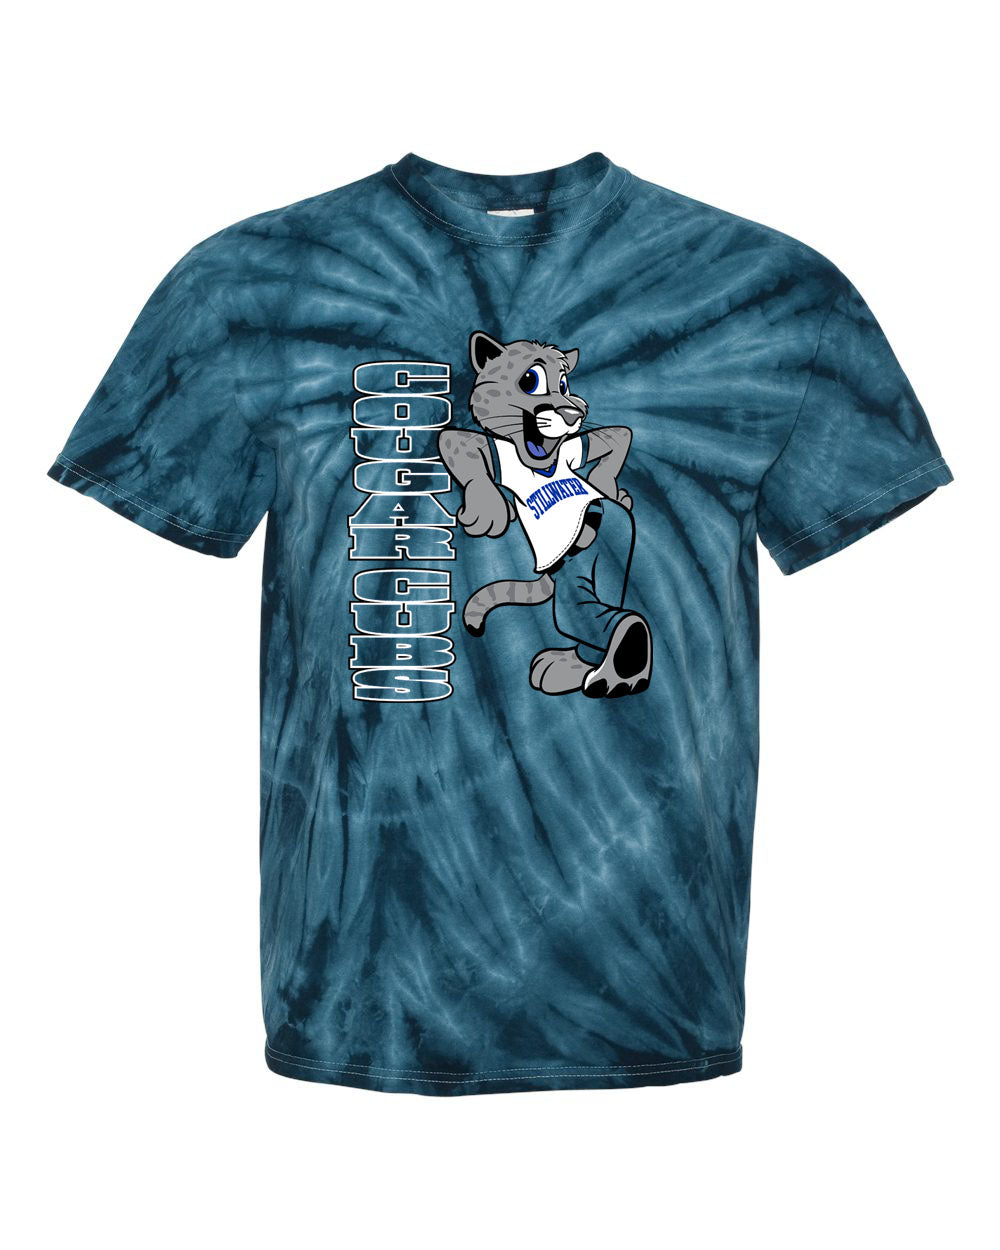 Stillwater Tie Dye t-shirt Design 21